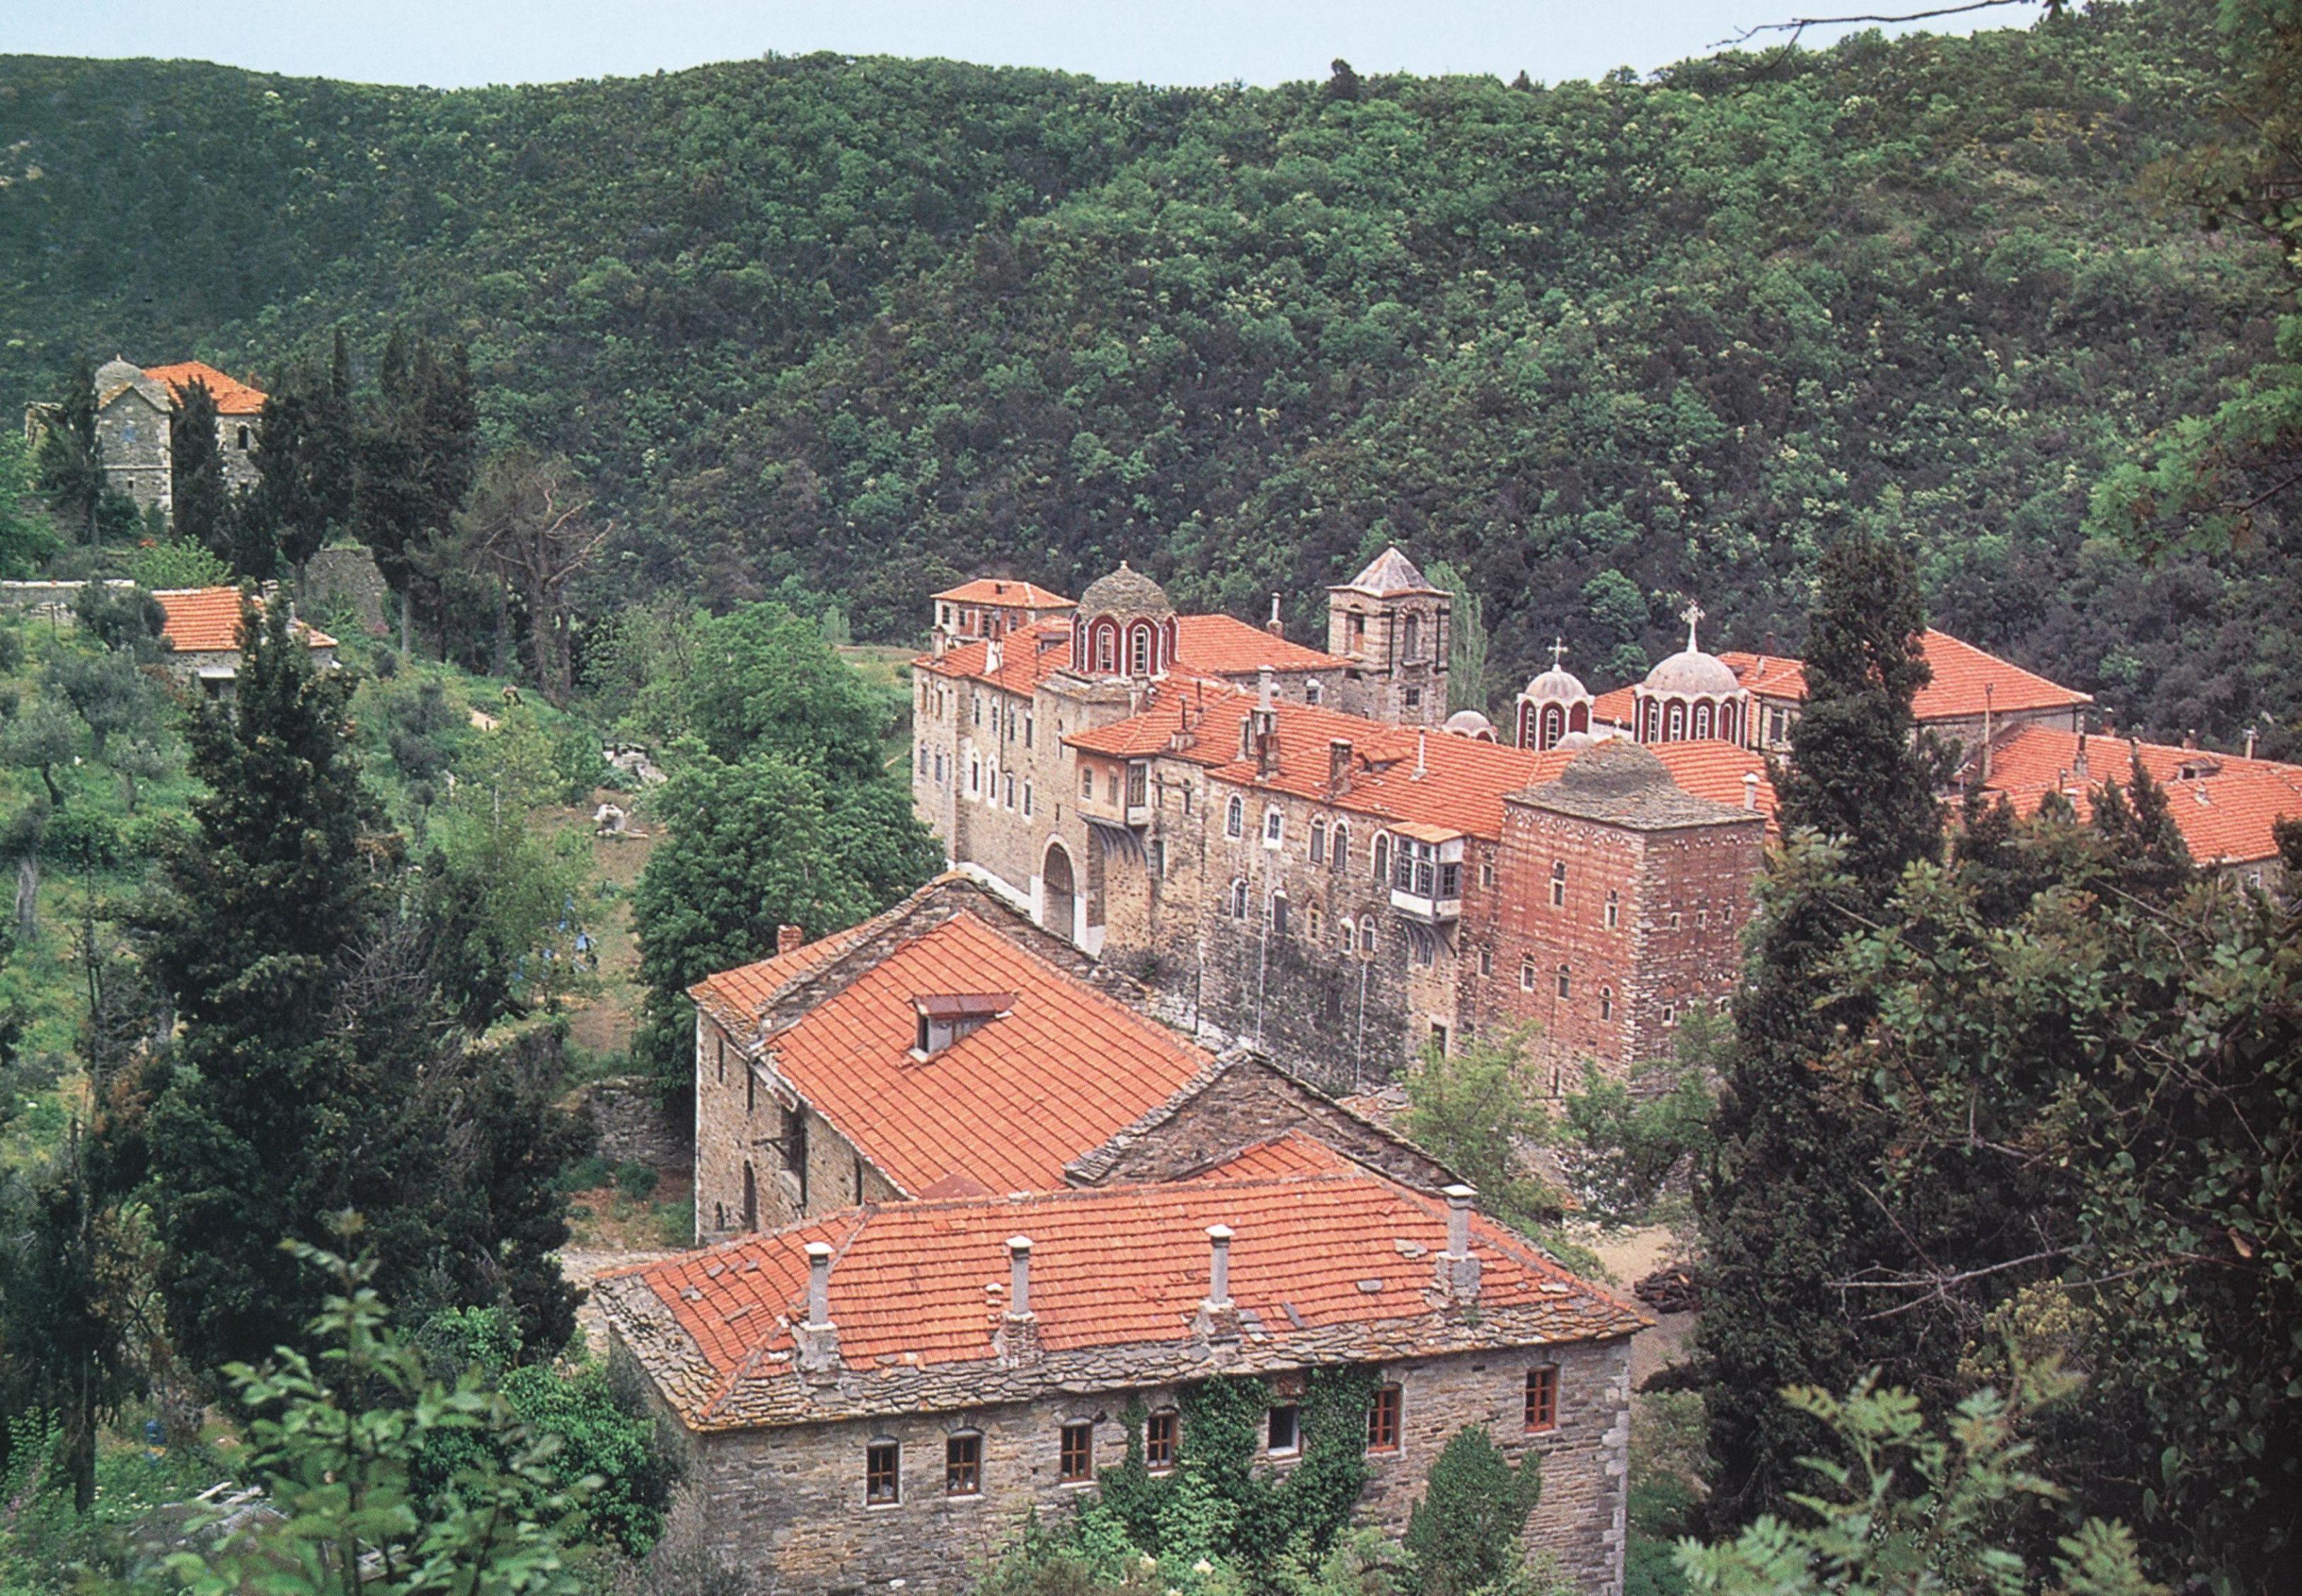 Νοτιανατολική άποψη της Μονής. The monastery from the southeast.